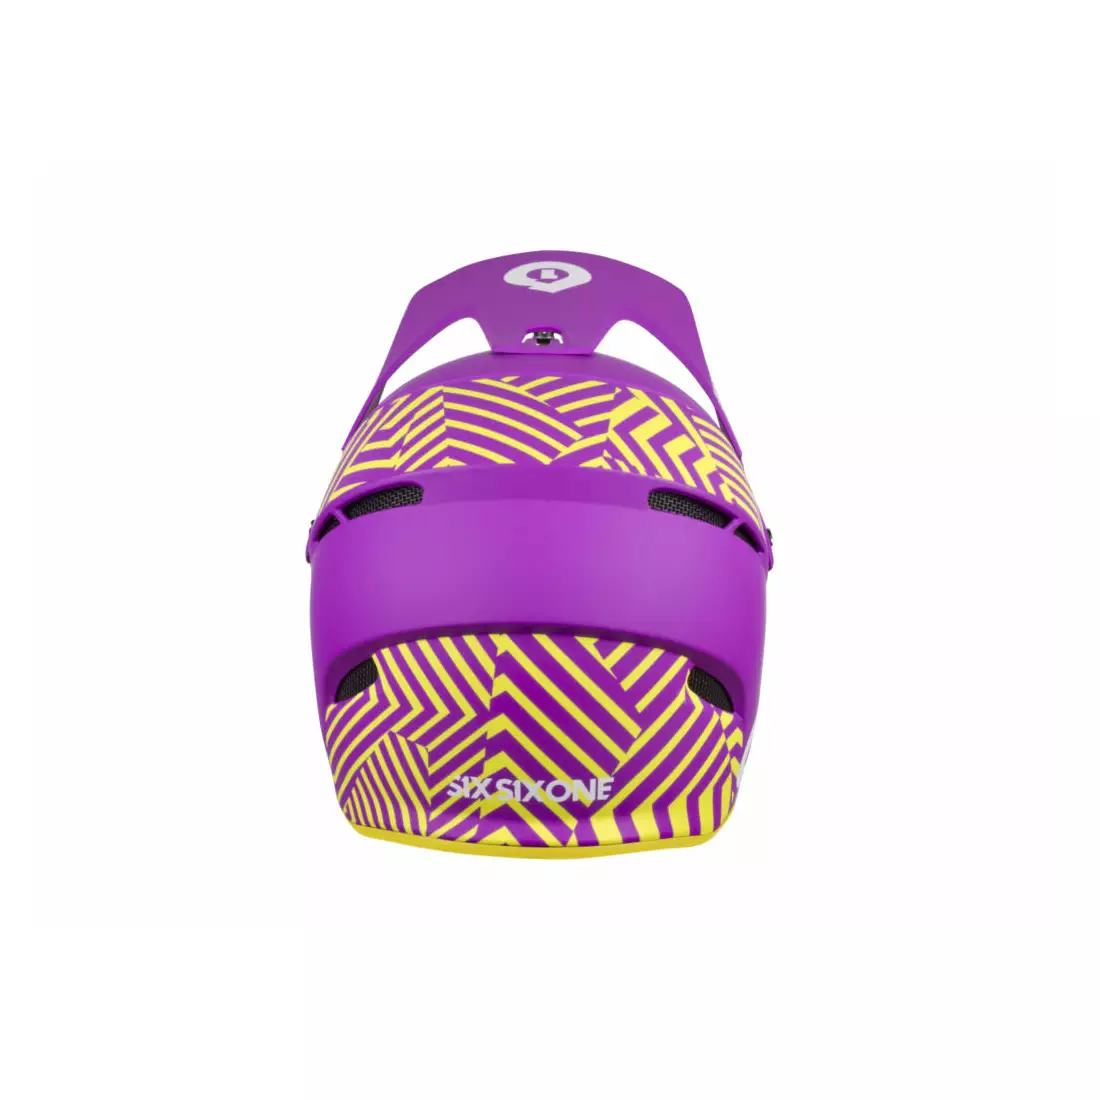 SisSixOne 661 RESET DAZZLE PURPLE Fahrradhelm fullface violett-gelb